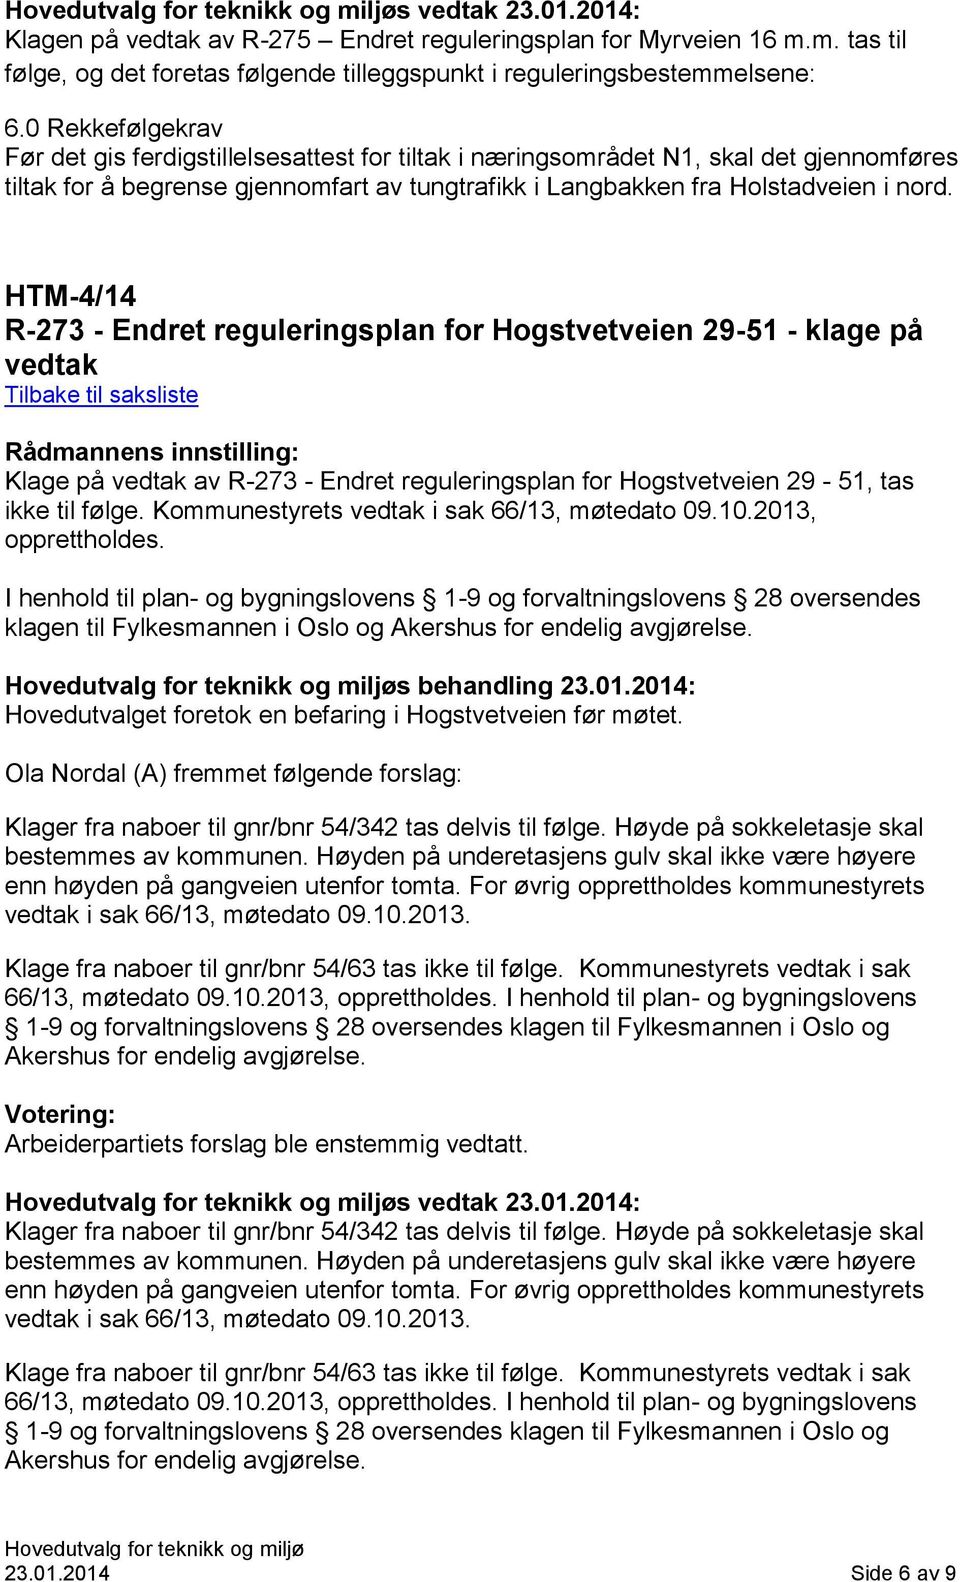 HTM-4/14 R-273 - Endret reguleringsplan for Hogstvetveien 29-51 - klage på vedtak Klage på vedtak av R-273 - Endret reguleringsplan for Hogstvetveien 29-51, tas ikke til følge.